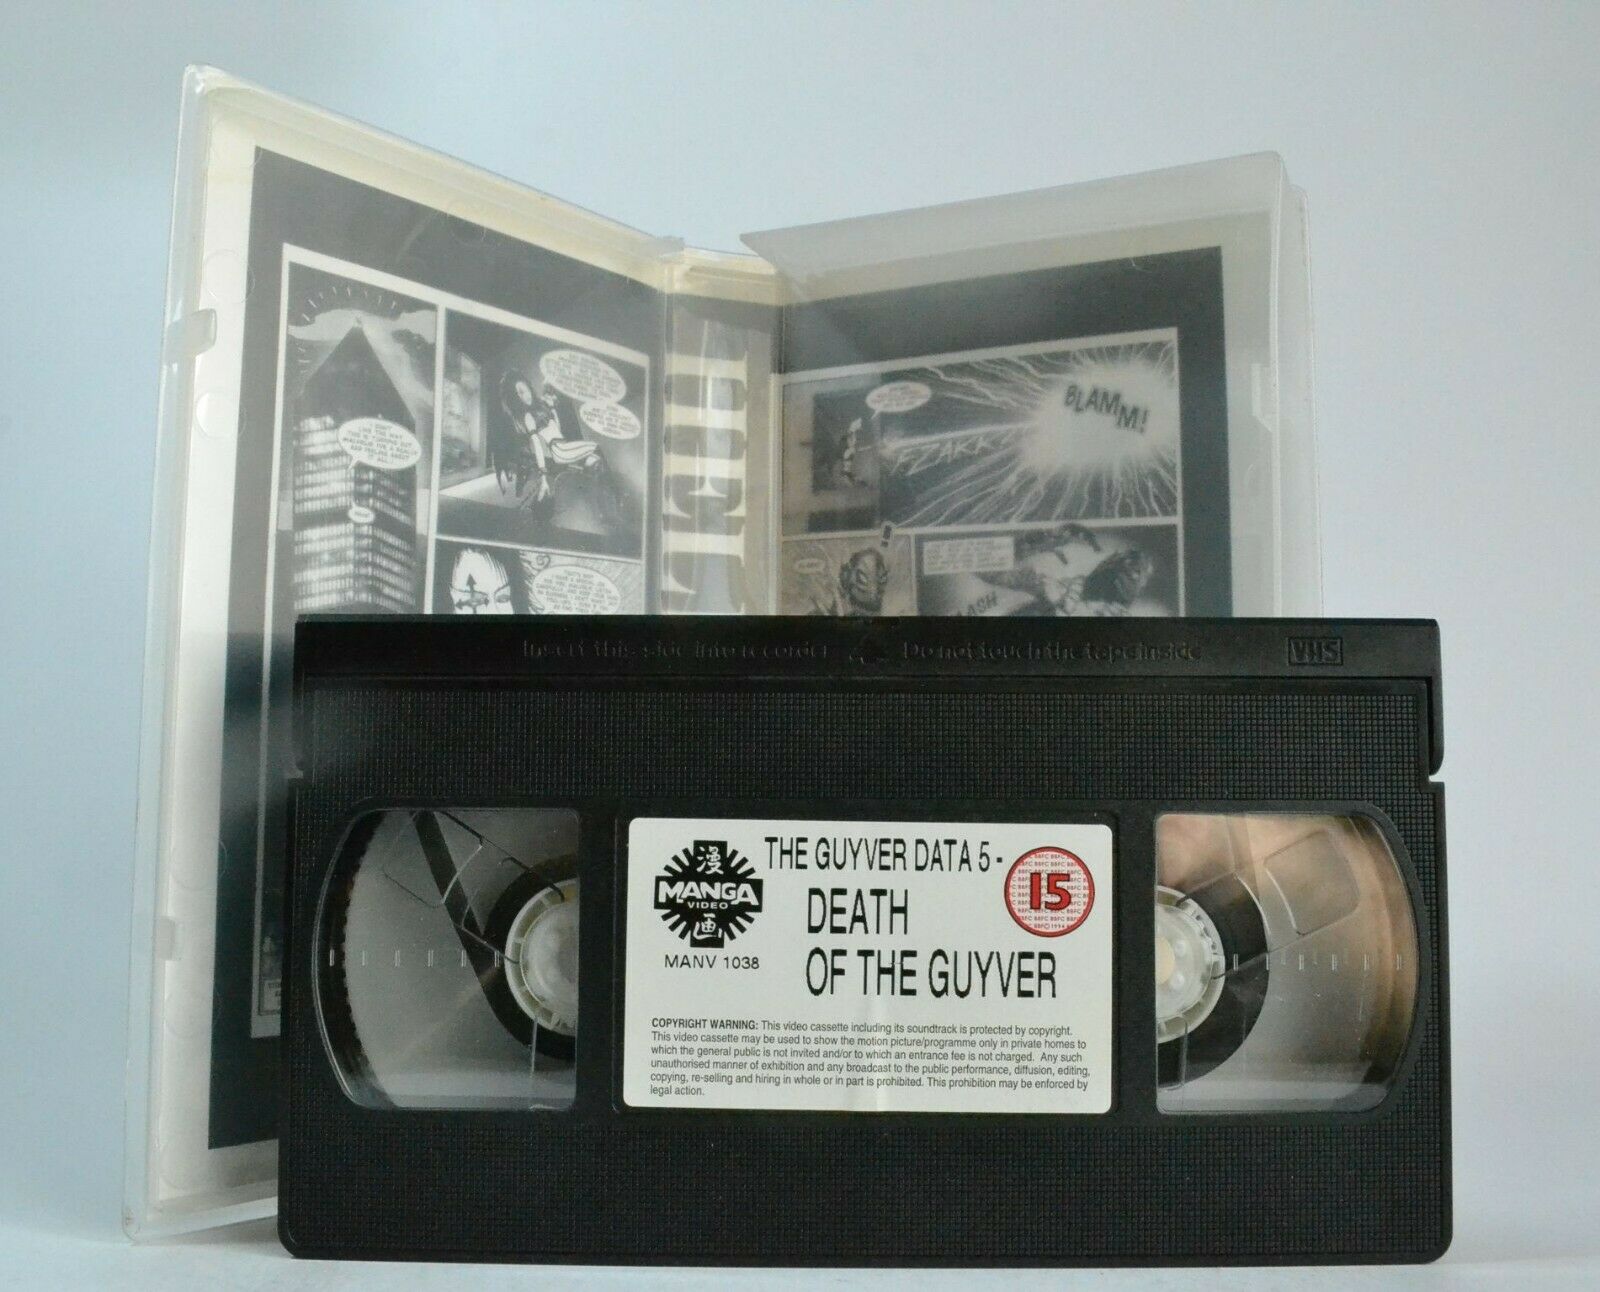 The Guyver Data 5: Death Of The Guyver [Manga Video] T.V. Action Series - VHS-